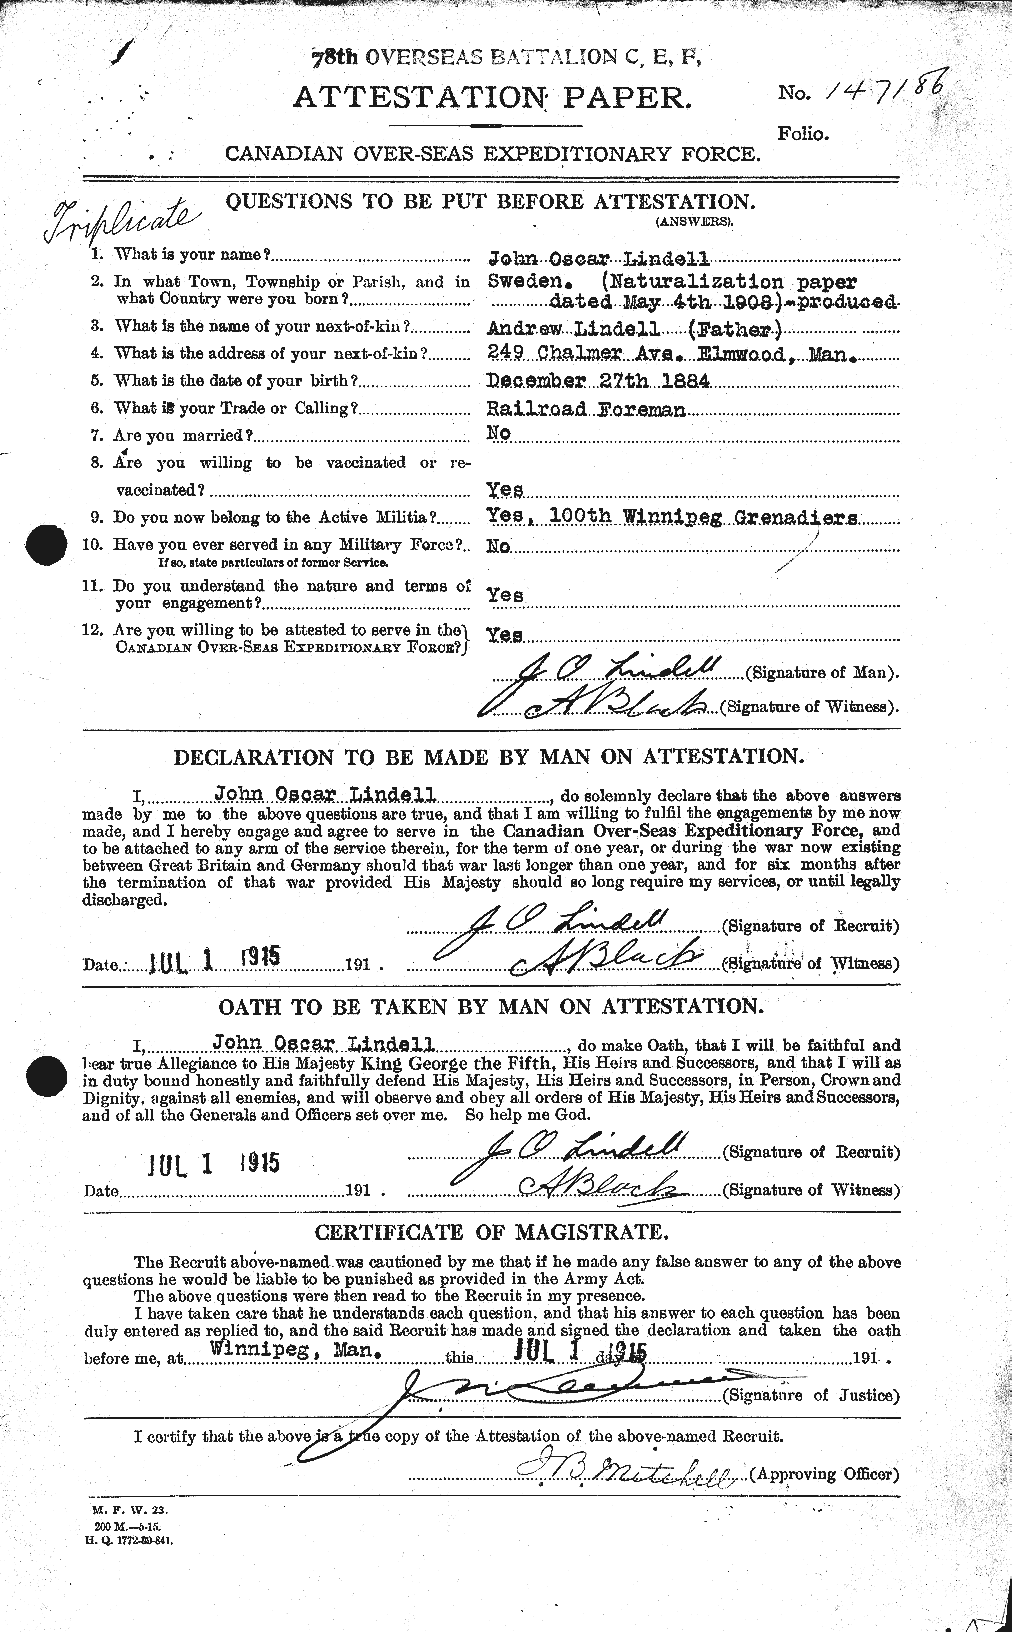 Dossiers du Personnel de la Première Guerre mondiale - CEC 467689a